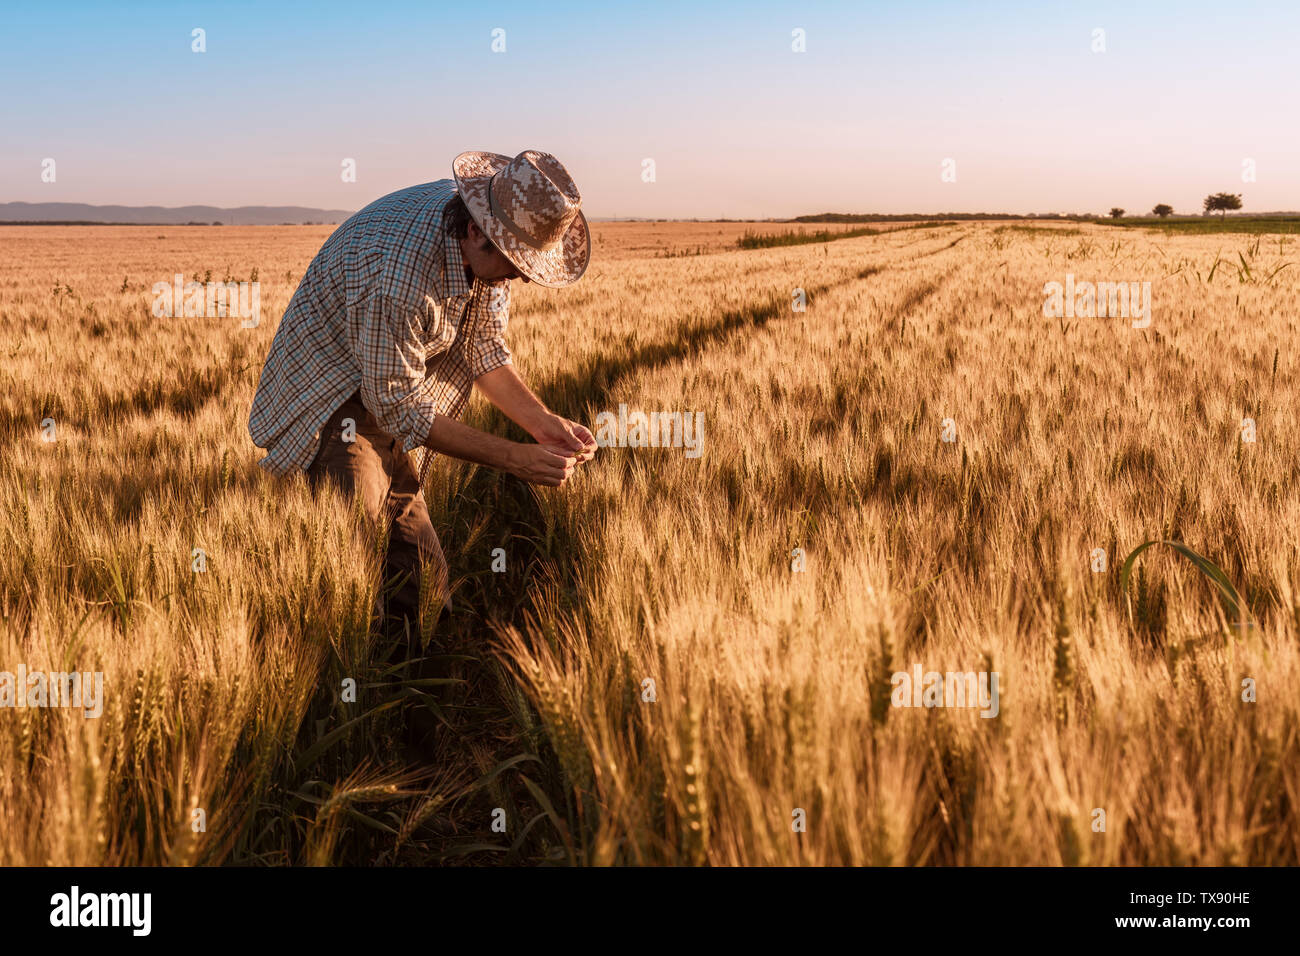 Agrónomo agricultor está inspeccionando la maduración espigas de trigo en el campo en verano cálido atardecer. Trabajador de granja analizando el desarrollo de cultivos de cereales. Foto de stock